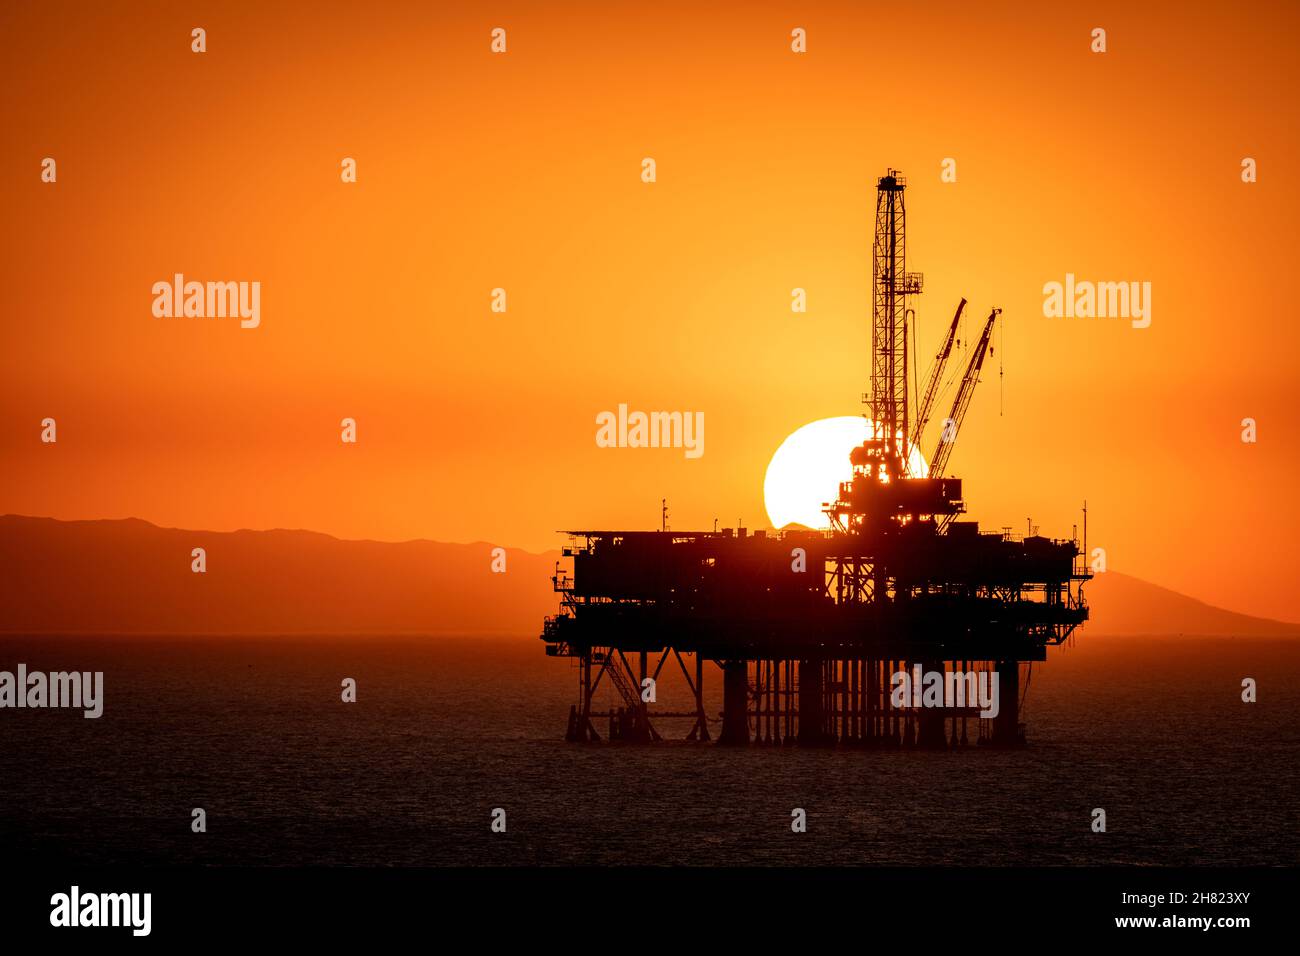 La piattaforma petrolifera offshore al largo della costa californiana si staglia contro un cielo arancione pieno di fumo da un vicino incendio mentre il sole tramonta dietro il carro. Foto Stock